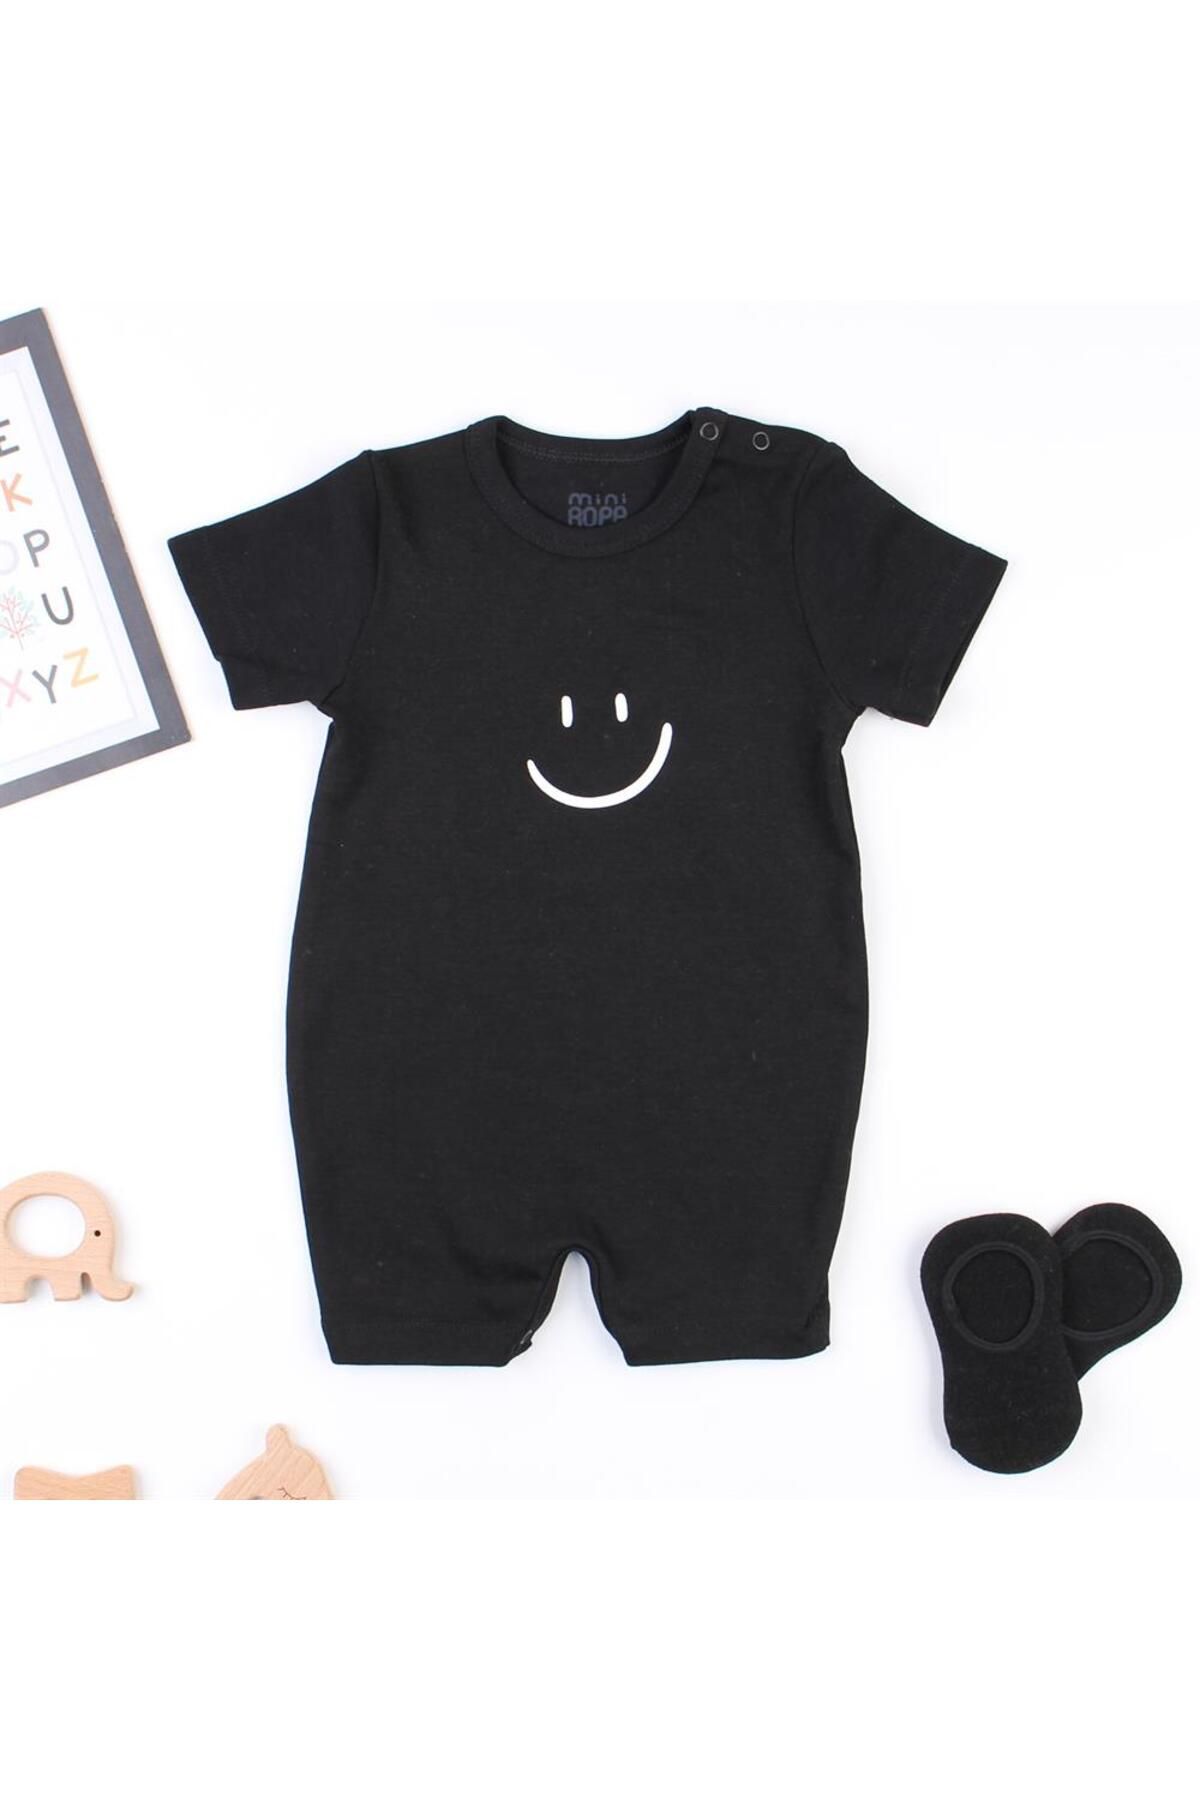 Mini Ropa Kısa Kollu Siyah Bebek Tulumu Smile Baskılı Yazlık Bebek Barbatöz Kısa Tulum